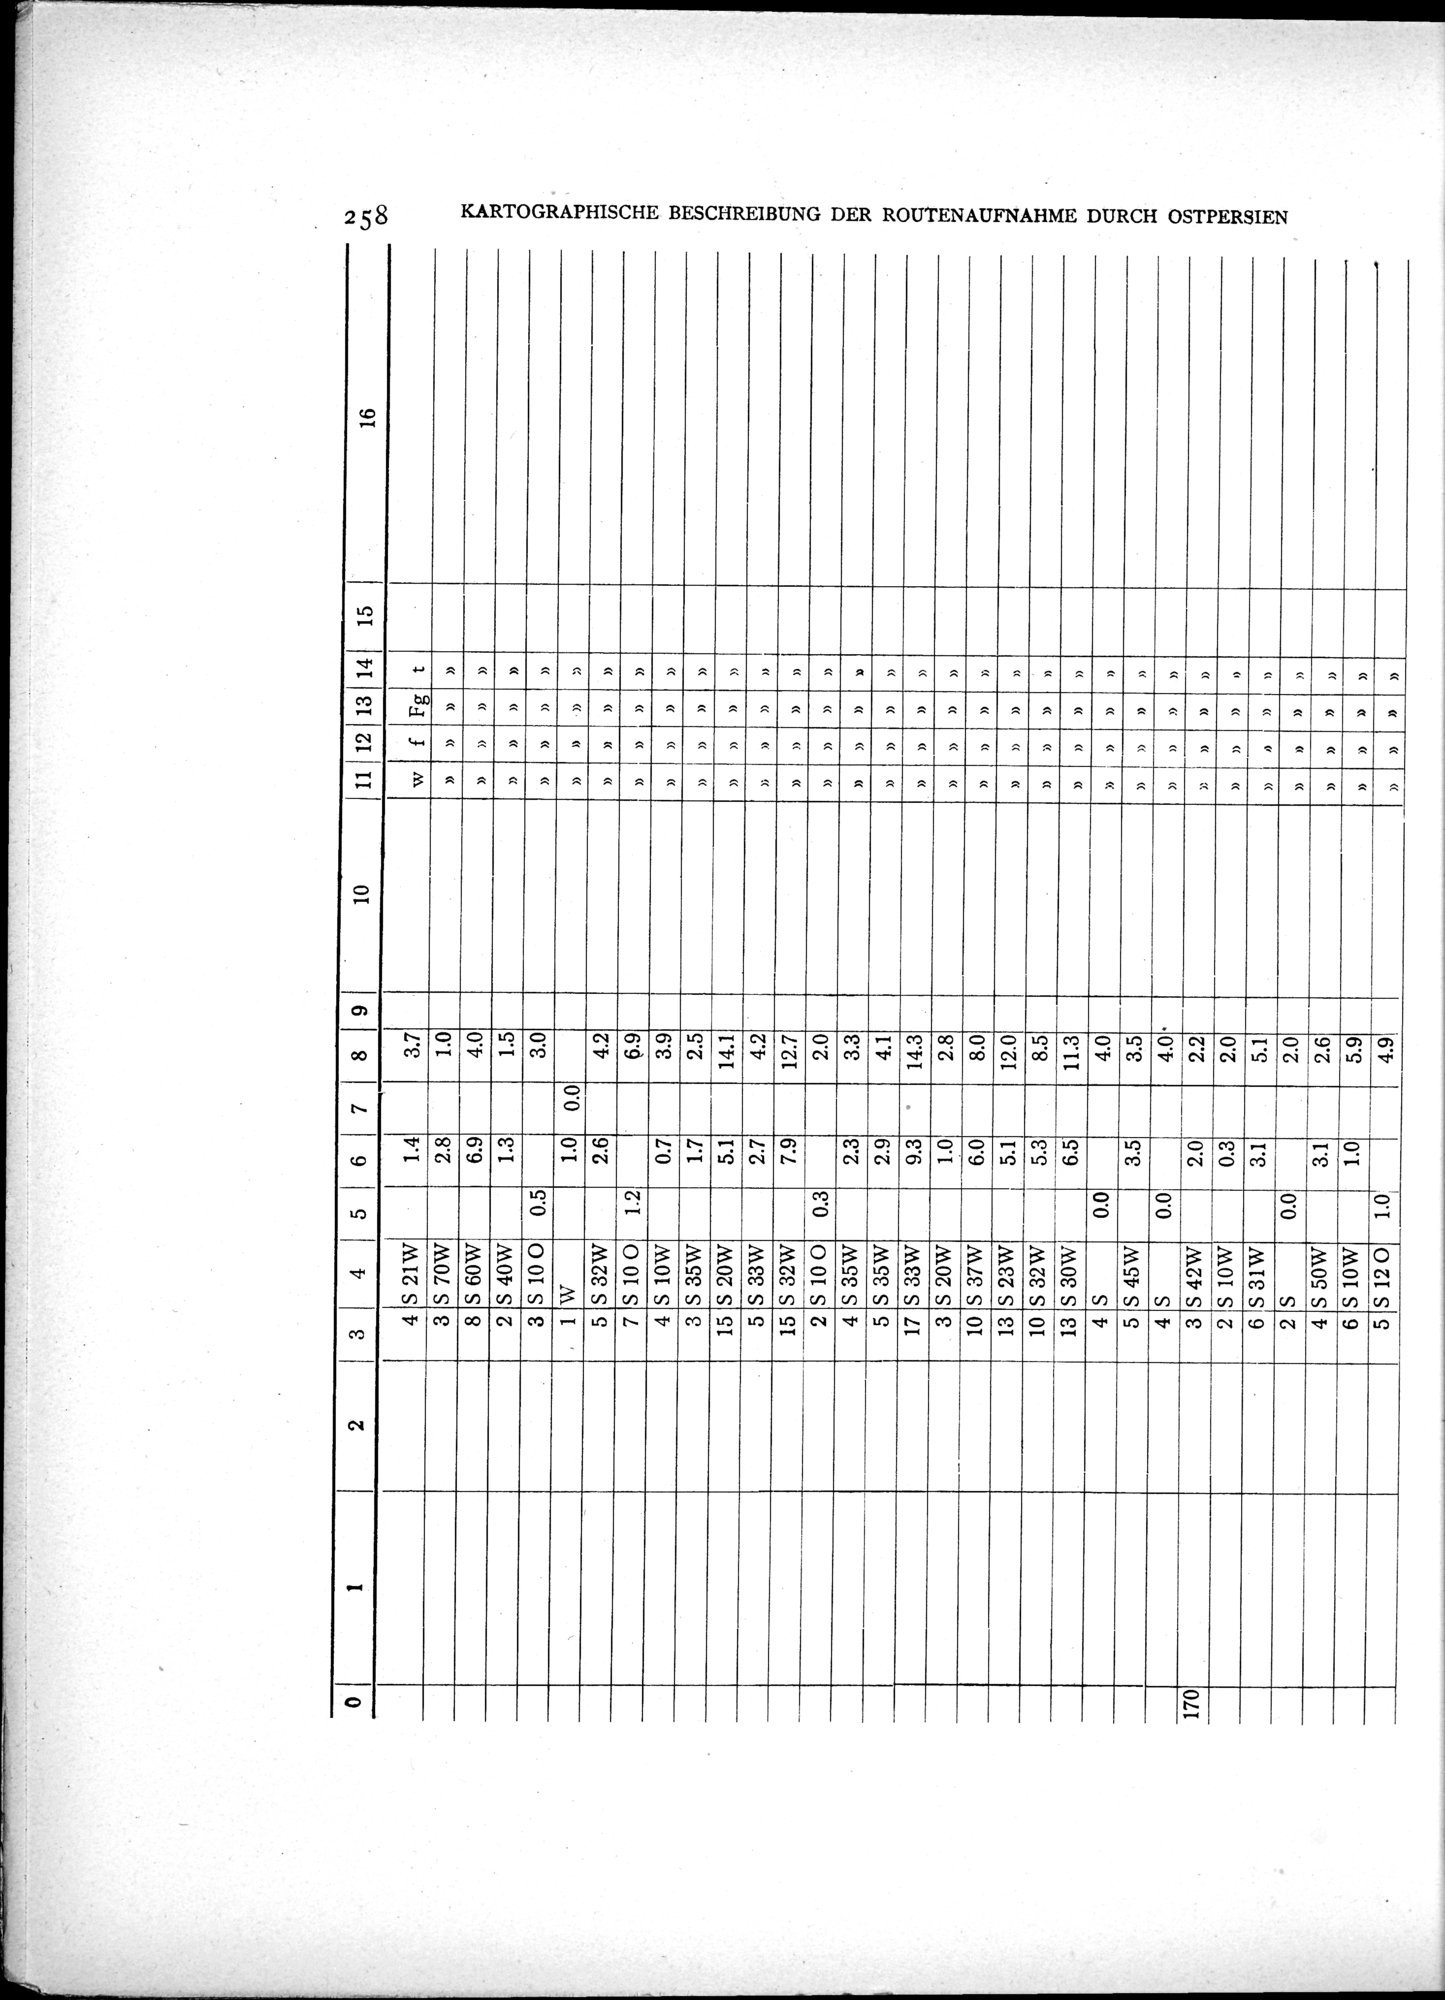 Eine Routenaufnahme durch Ostpersien : vol.2 / Page 328 (Grayscale High Resolution Image)